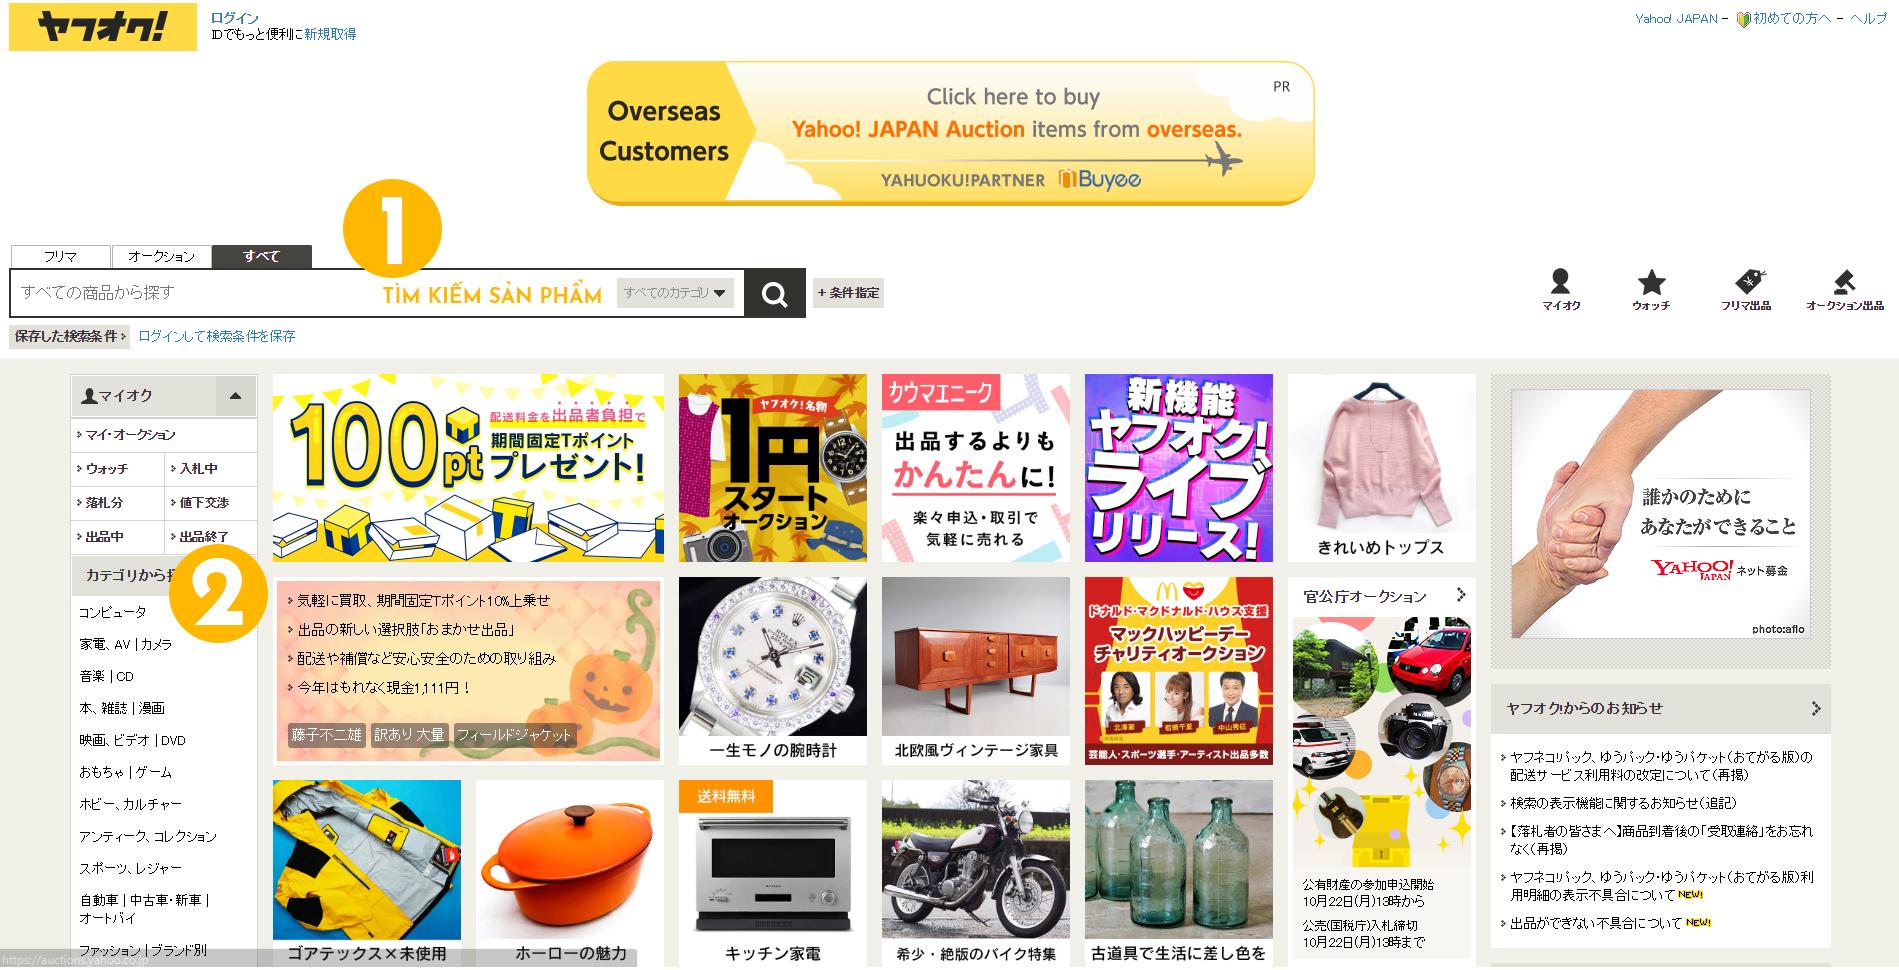 Mua đồ bằng cách đấu giá hàng Nhật – Cách thức đấu giá hàng Nhật